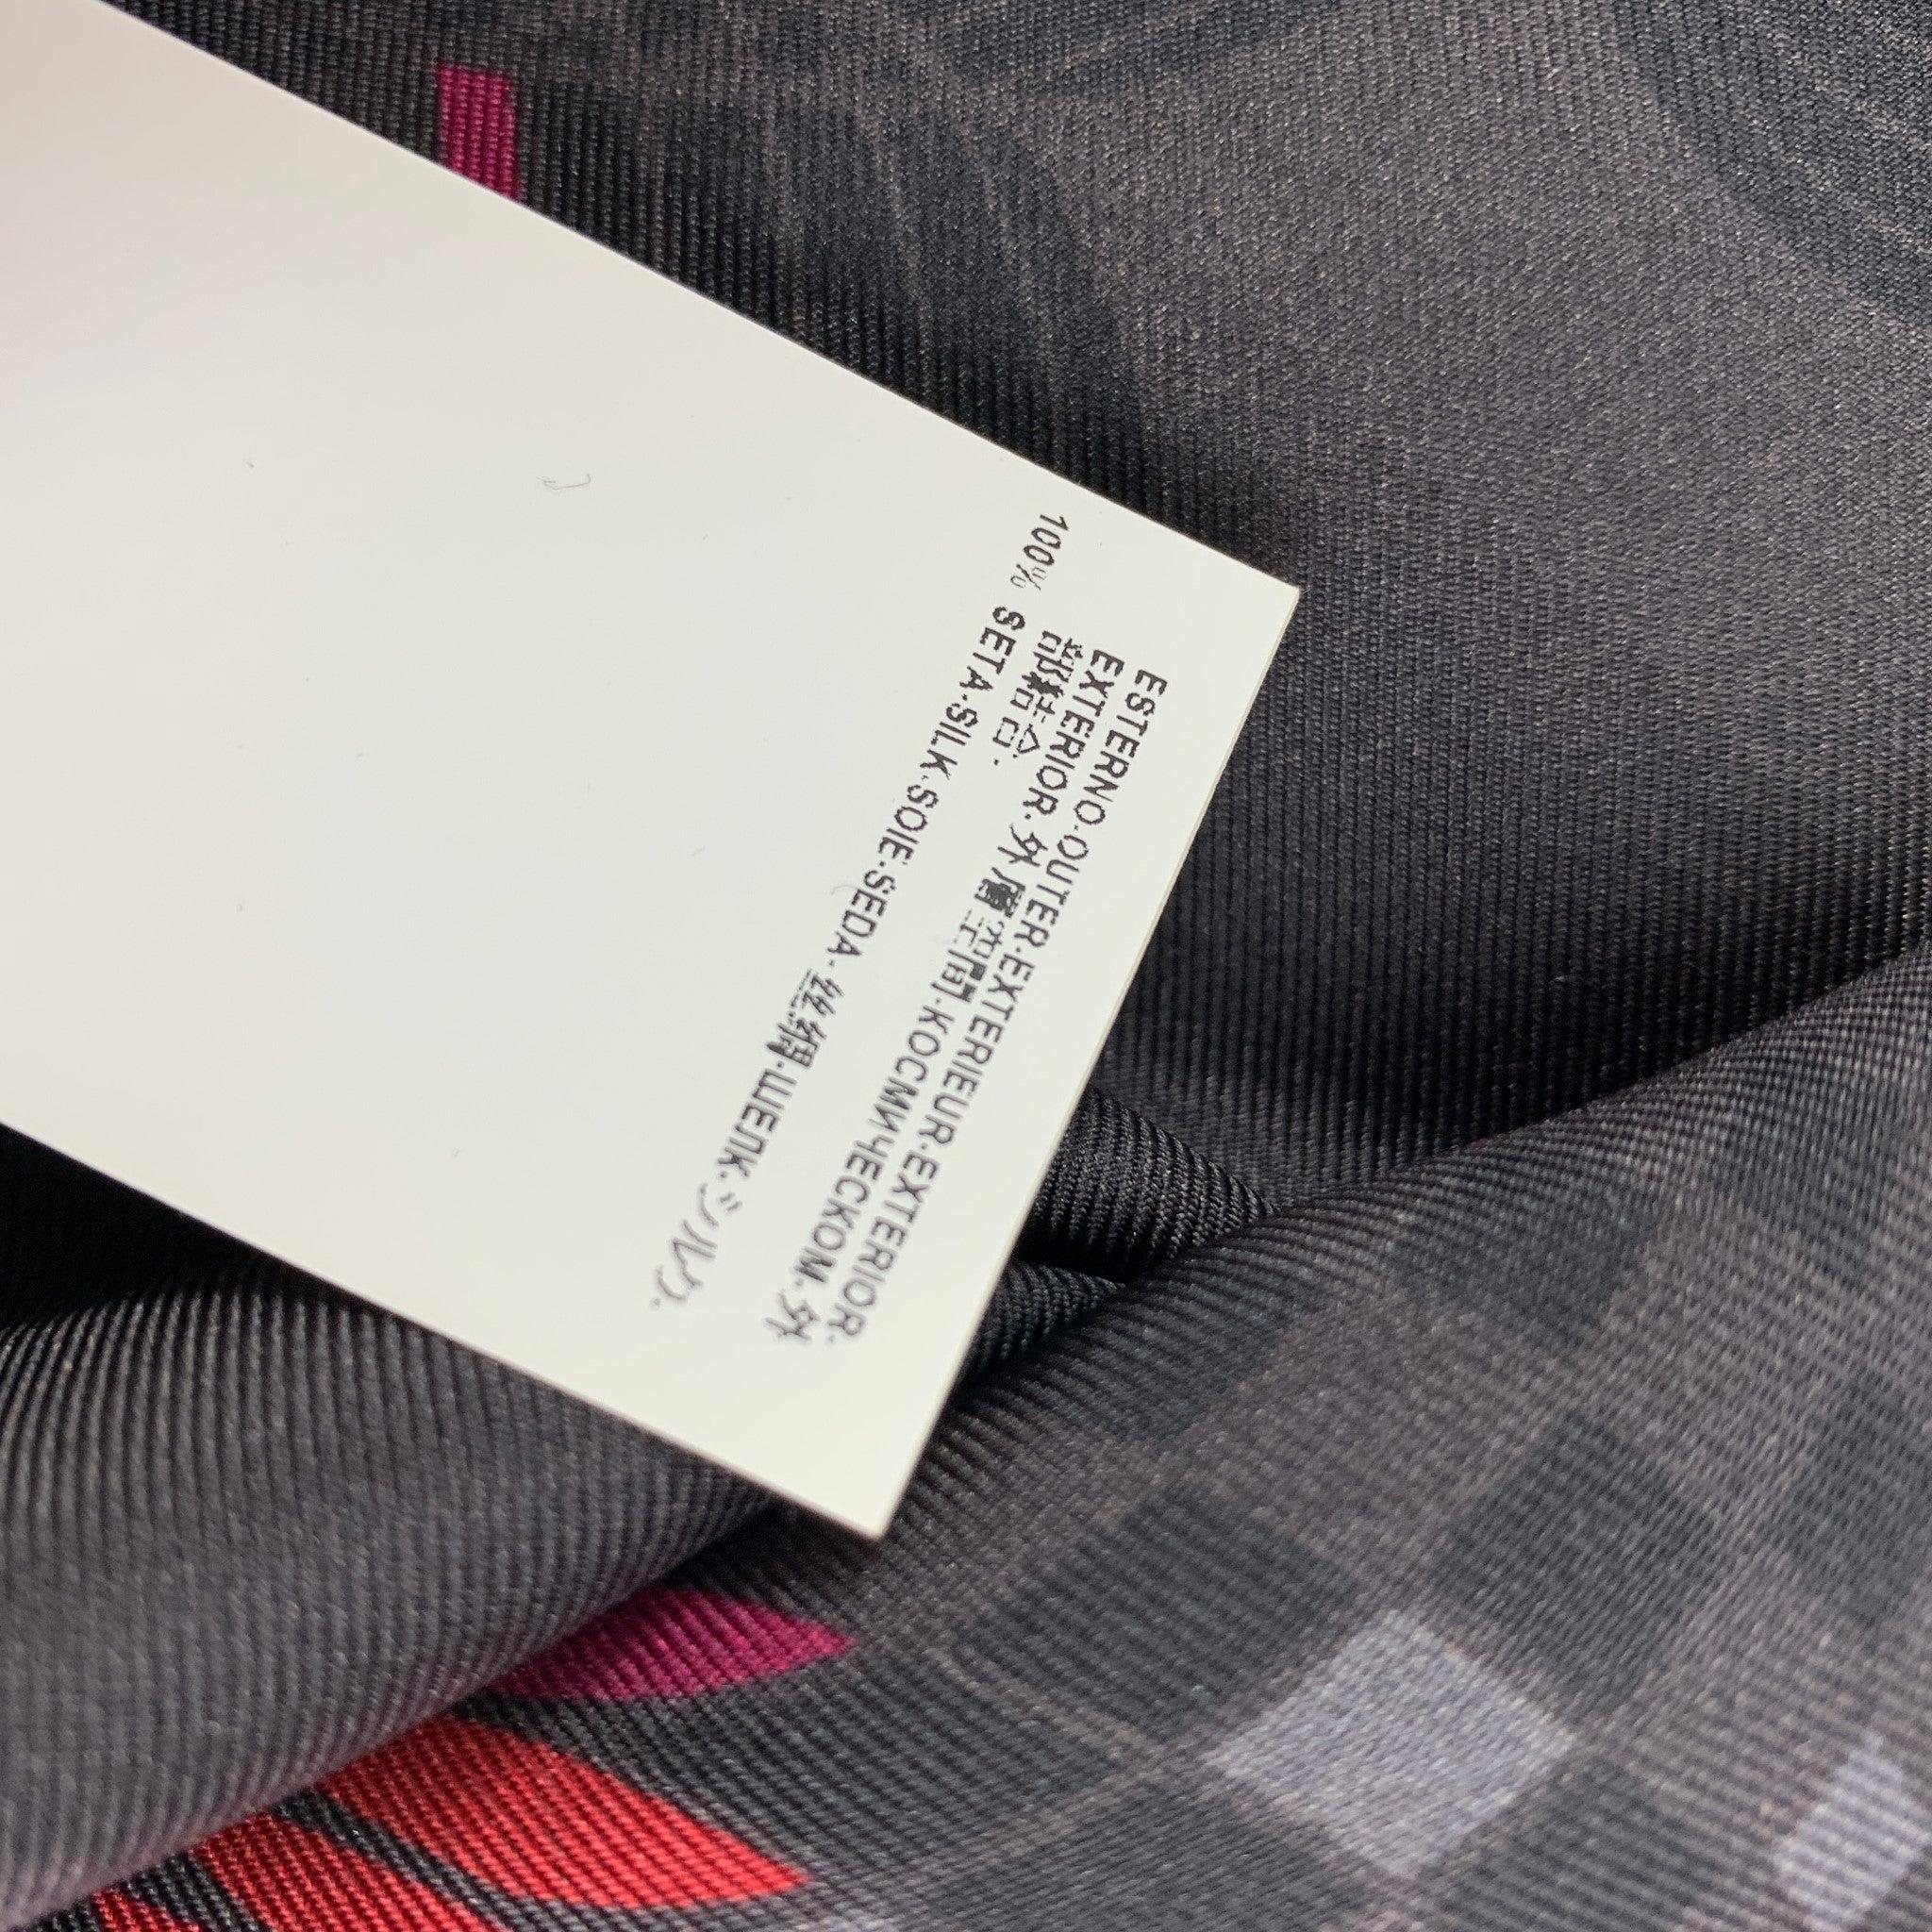 VERSACE COLLECTION - Chemise à manches longues en soie imprimée gris foncé et magenta, taille S Pour hommes en vente